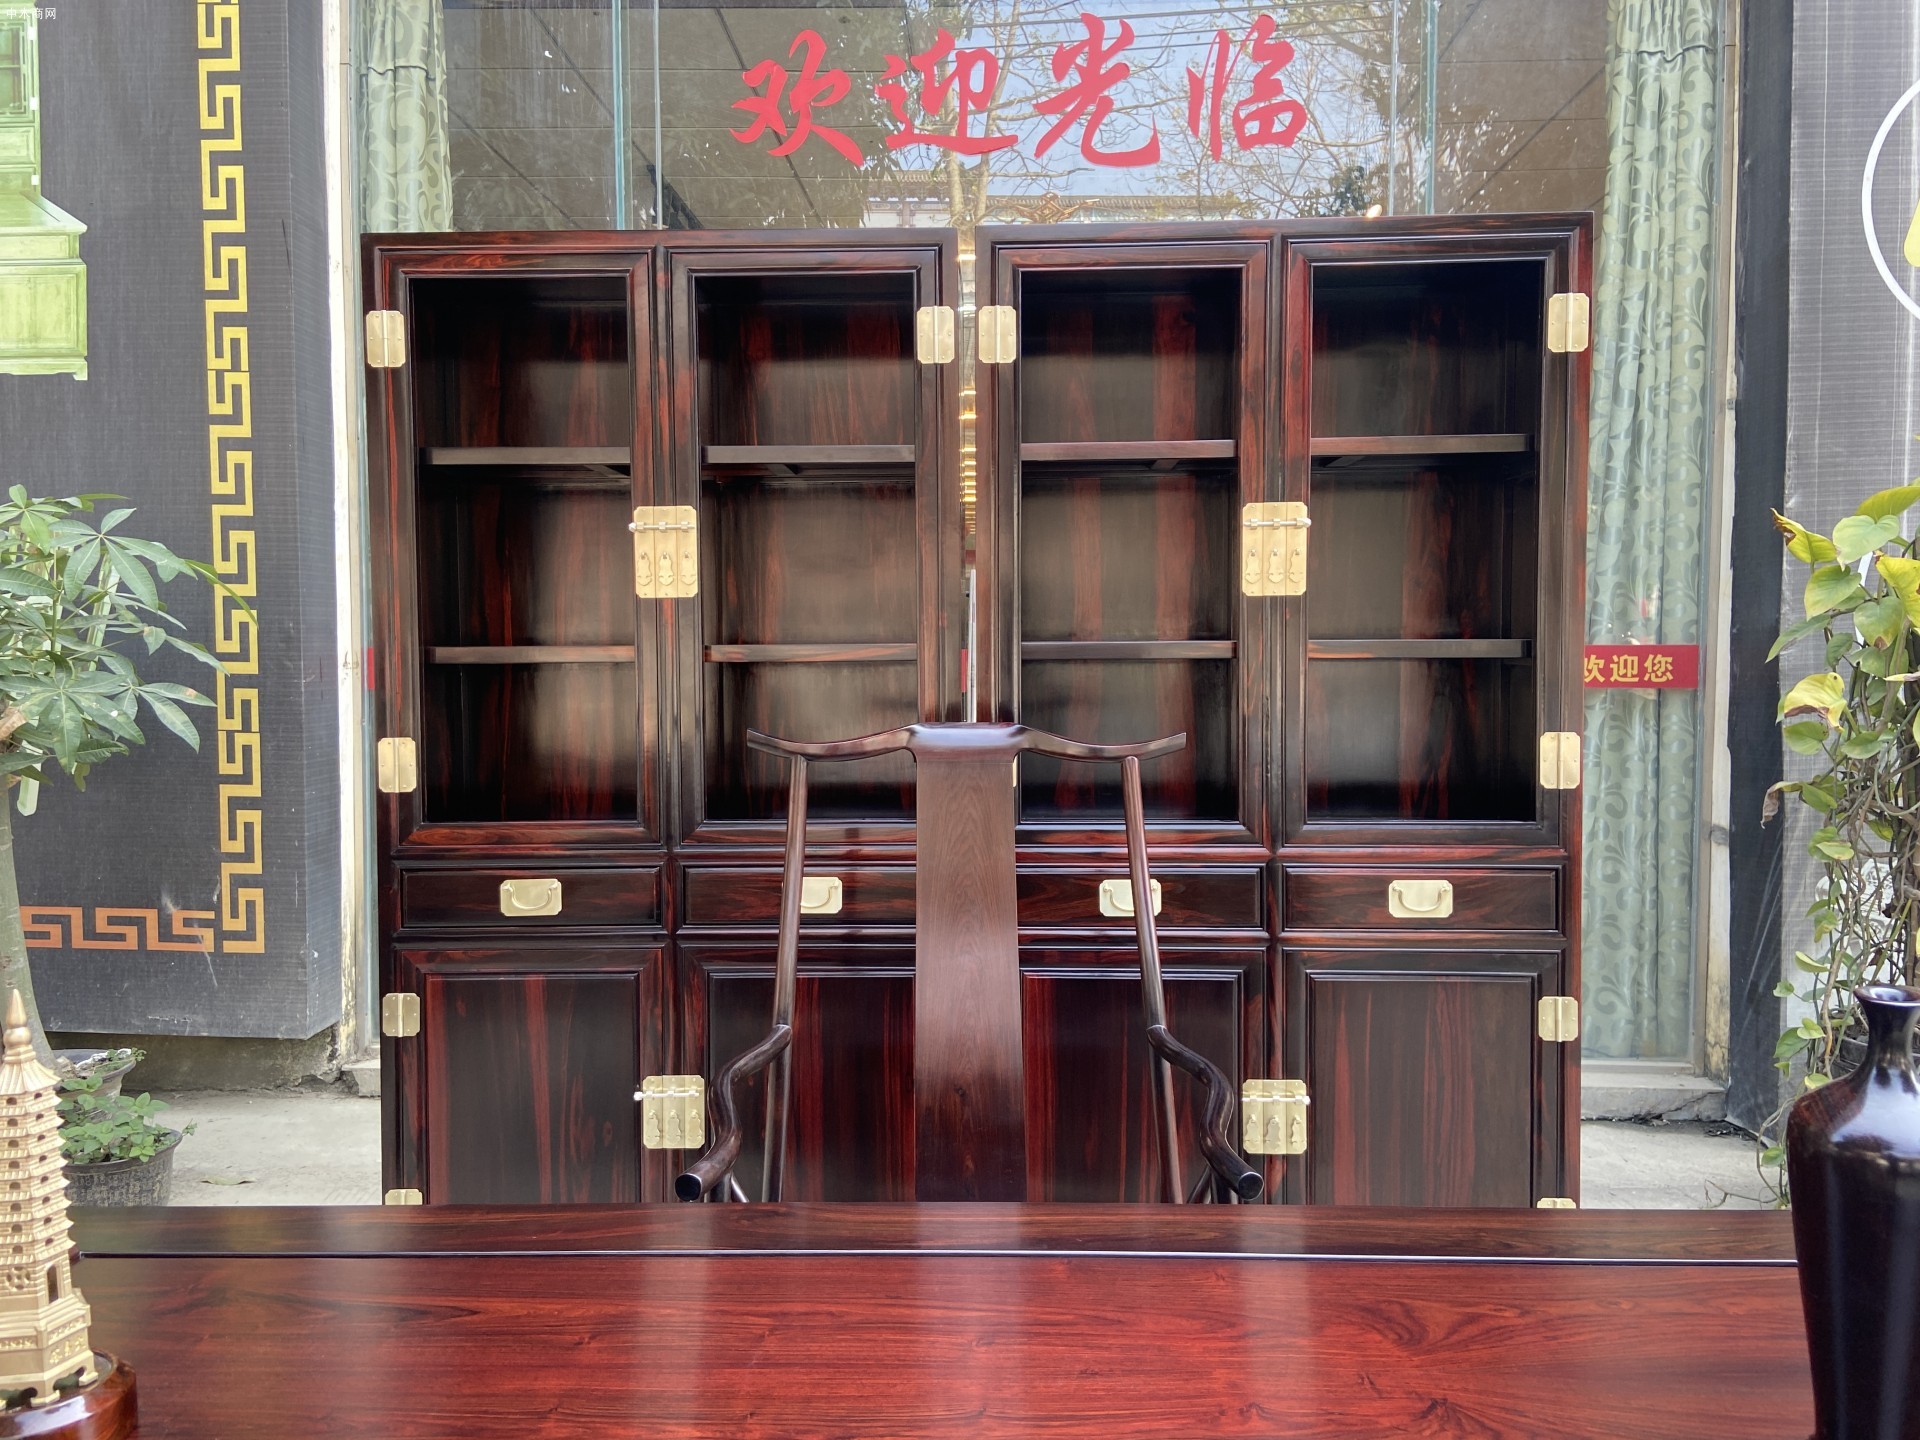 老挝大红酸枝明式书房的传承与再生,专家齐论匠心居红木明式书房批发